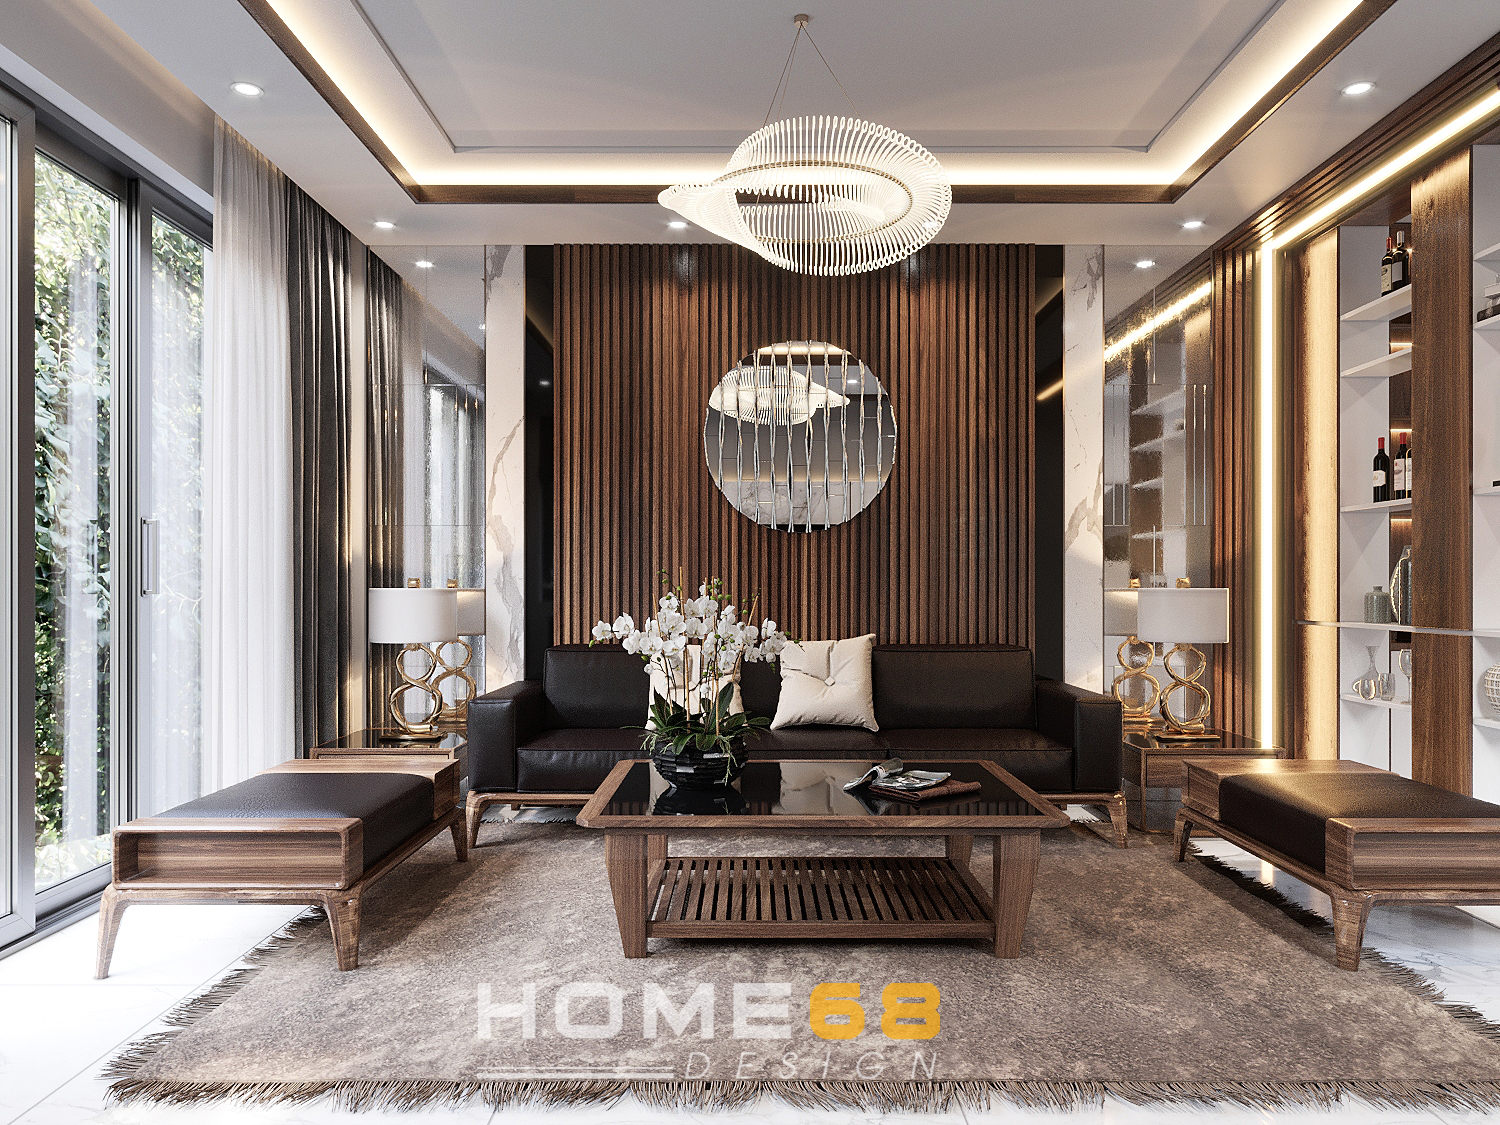 Sự hiện đại và tinh tế là những gì người ta nghĩ đến khi nhìn thấy thiết kế nội thất phòng khách hiện đại. Xem qua hình ảnh và các thiết kế nội thất phòng khách hiện đại và cảm nhận sự cuốn hút của chúng để tạo ra một không gian sống vừa hiện đại và ấm cúng.